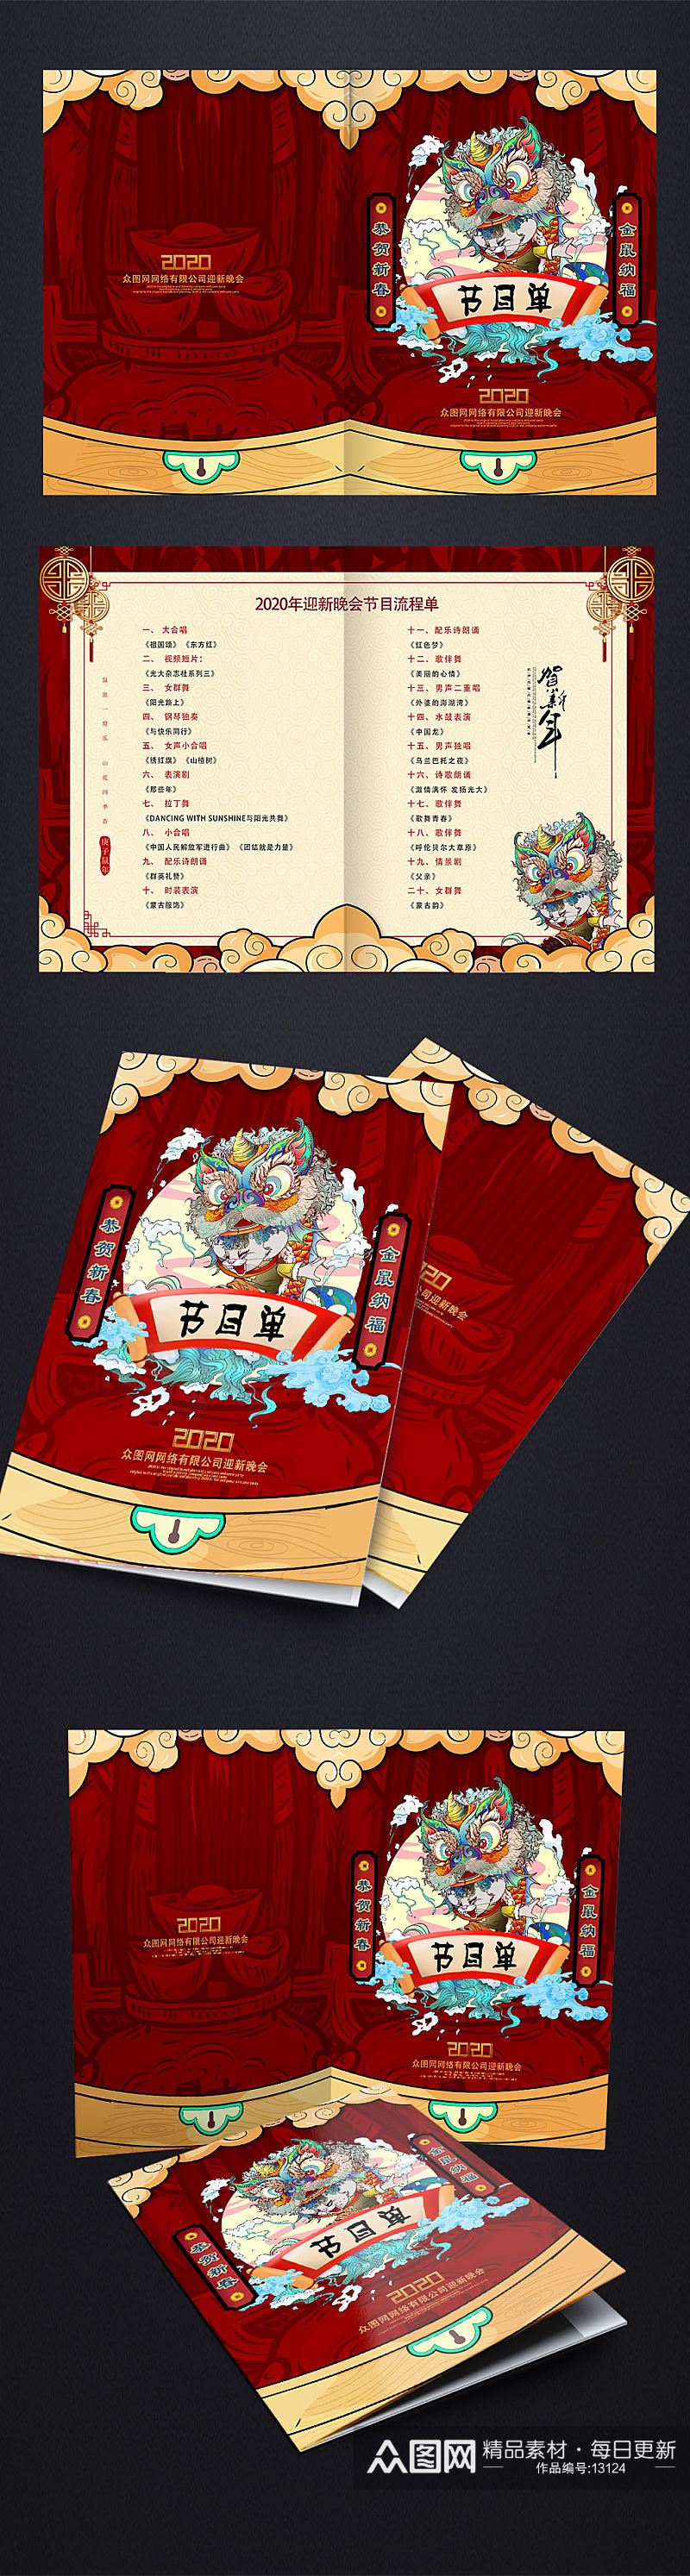 金鼠纳福春节晚会节目单设计素材